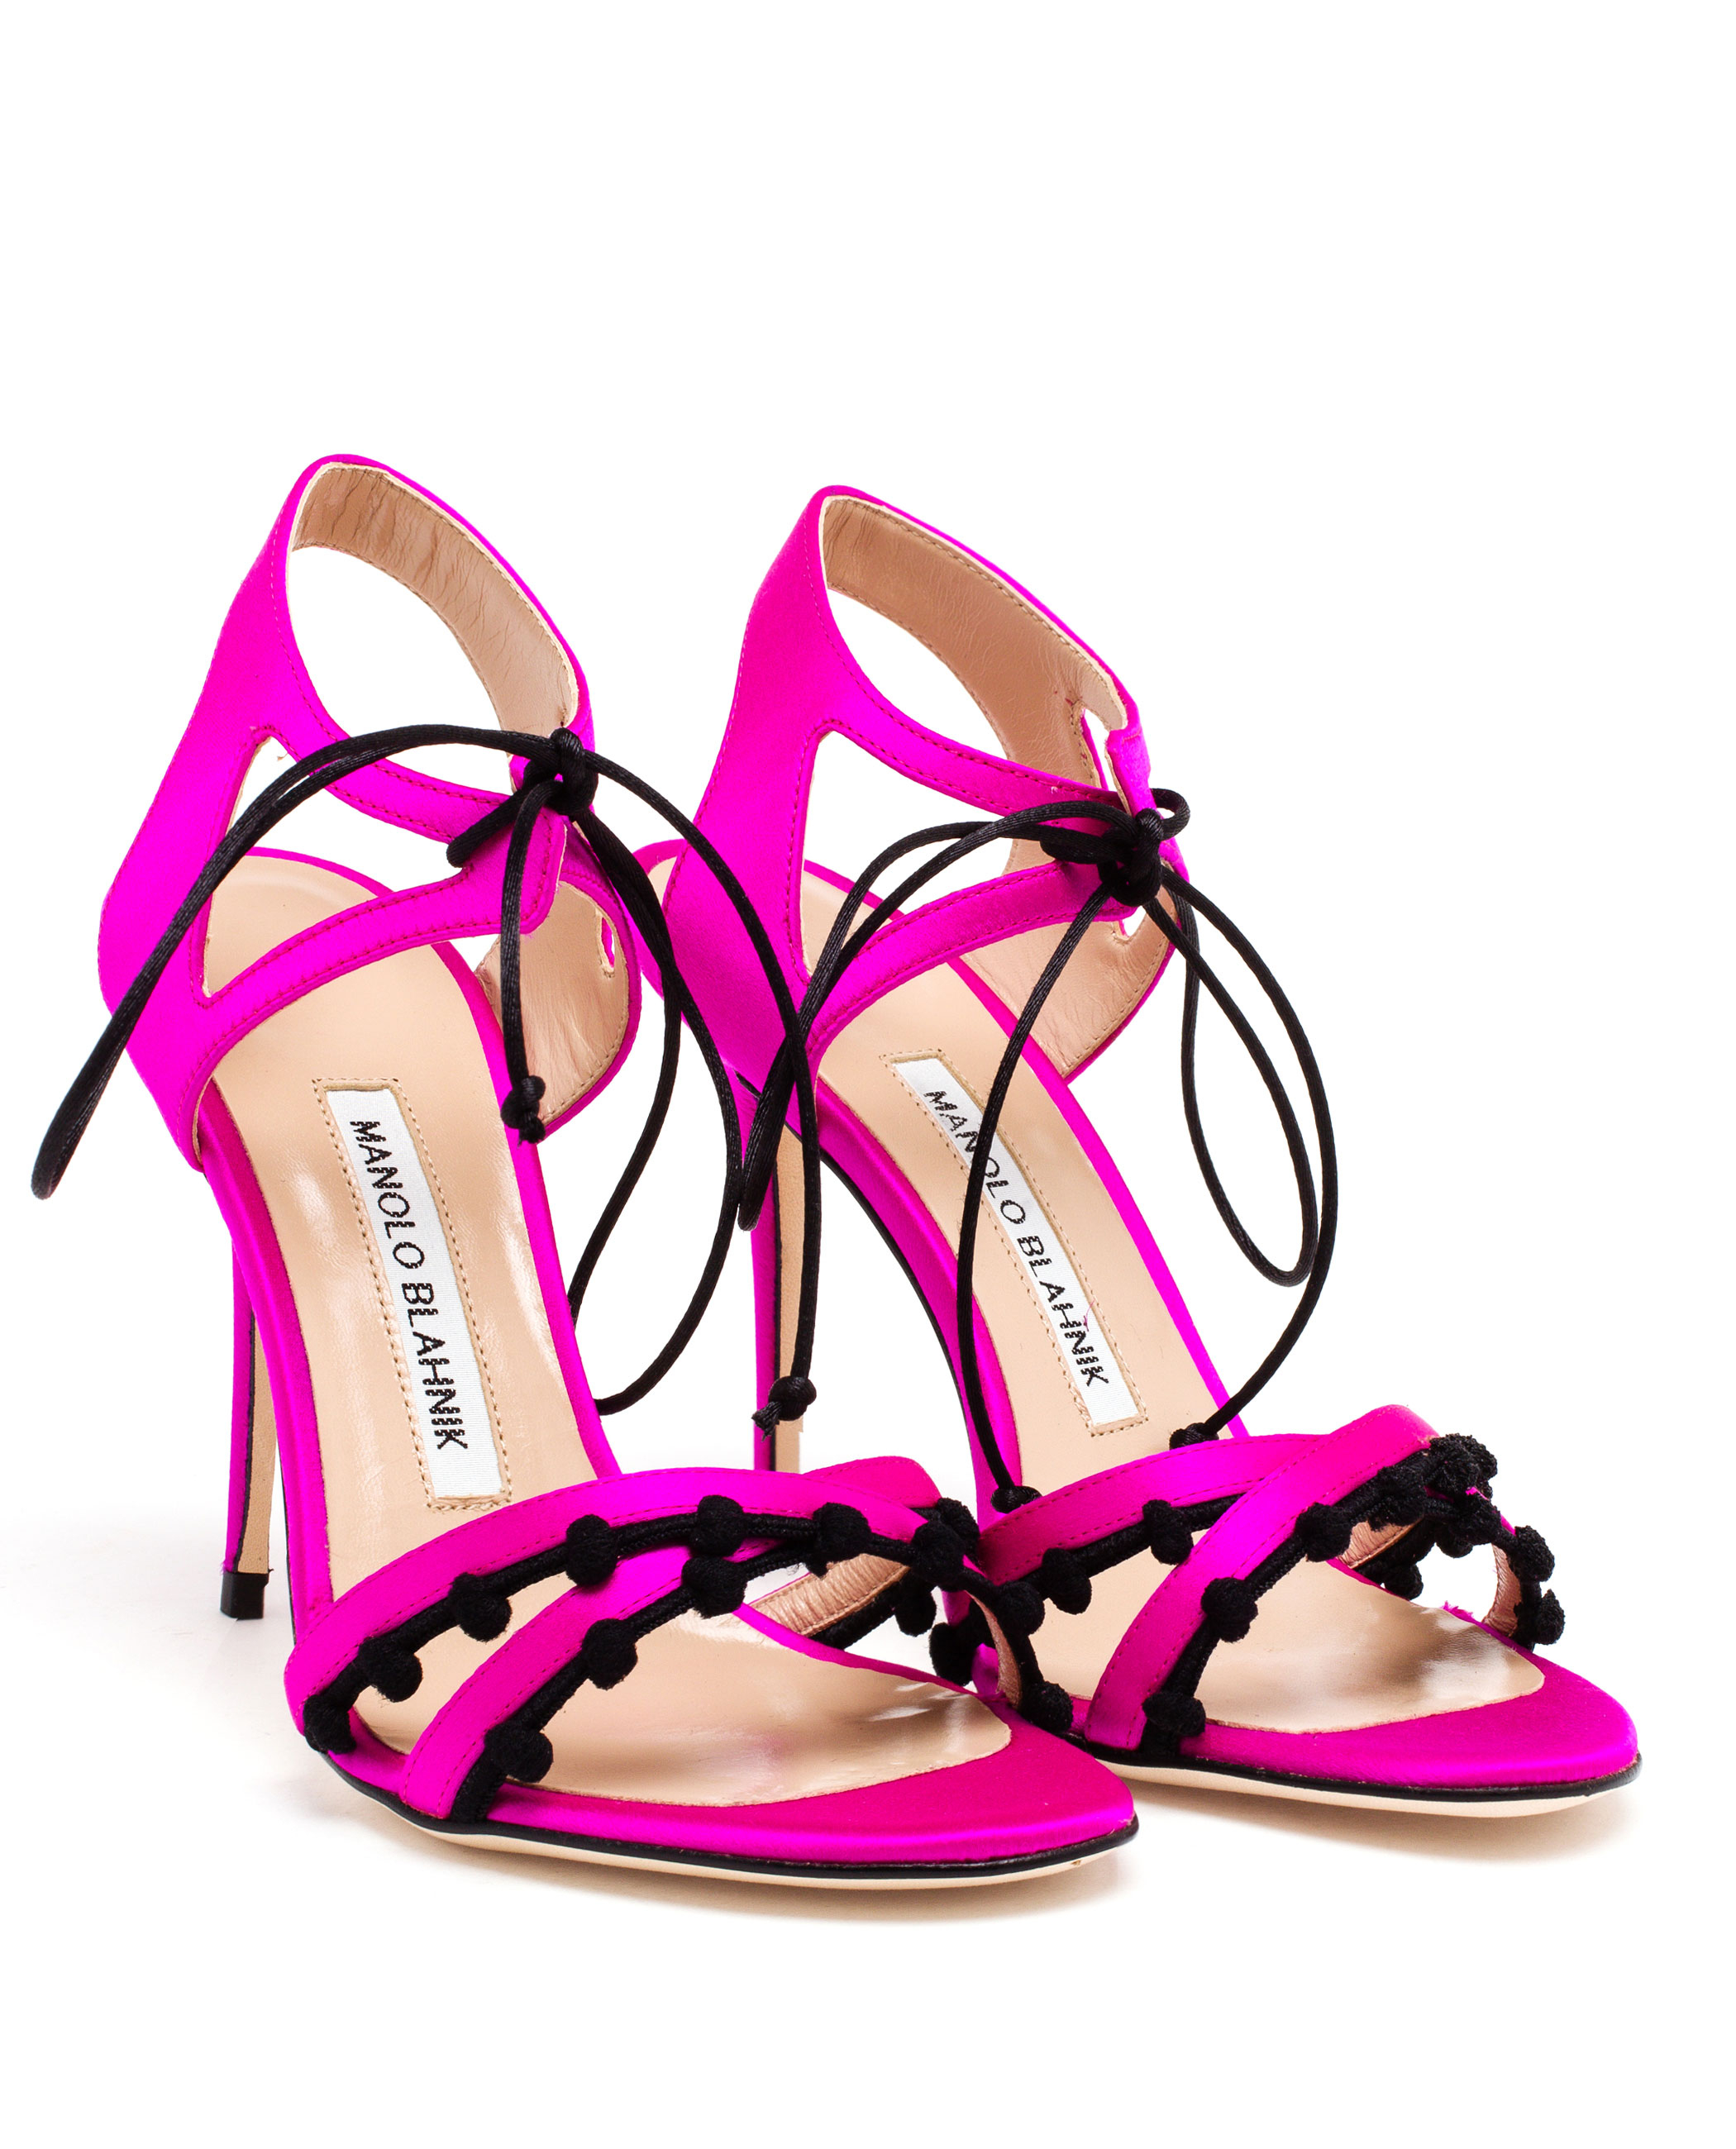 Manolo blahnik Satin Esparra Sandals in Pink | Lyst